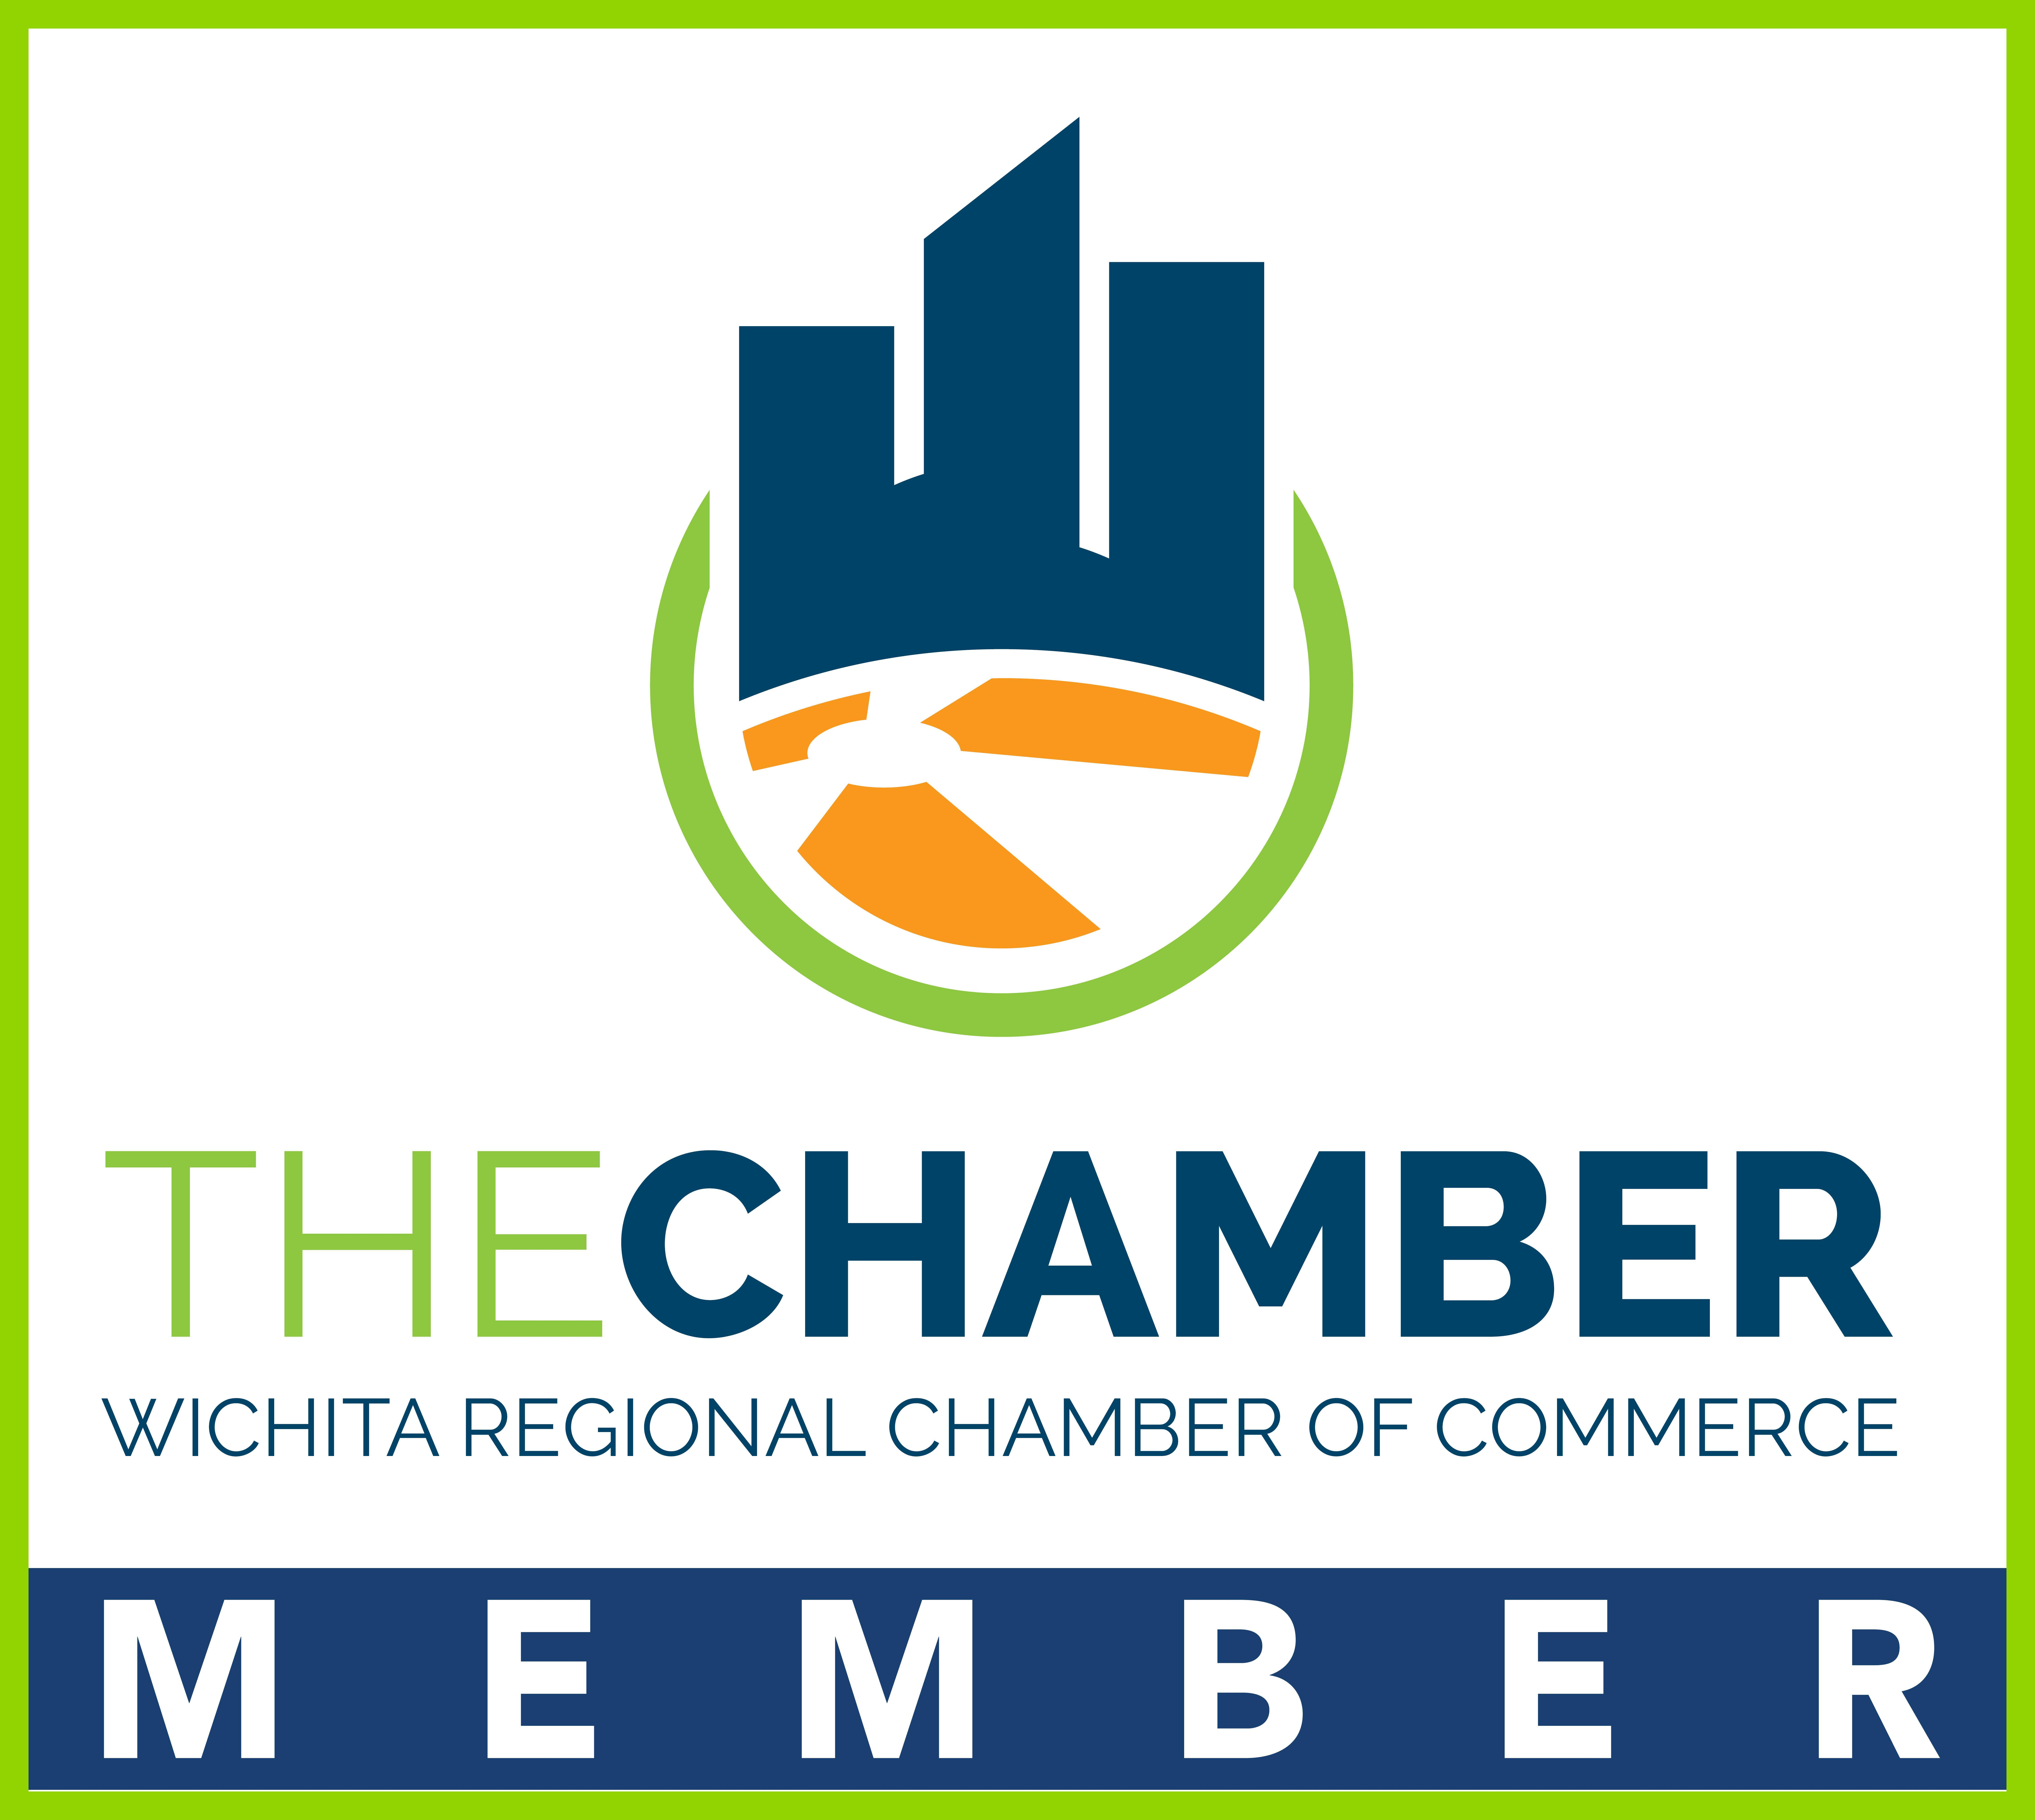 The Chamber Wichita Regional Chamber if Commerce Member